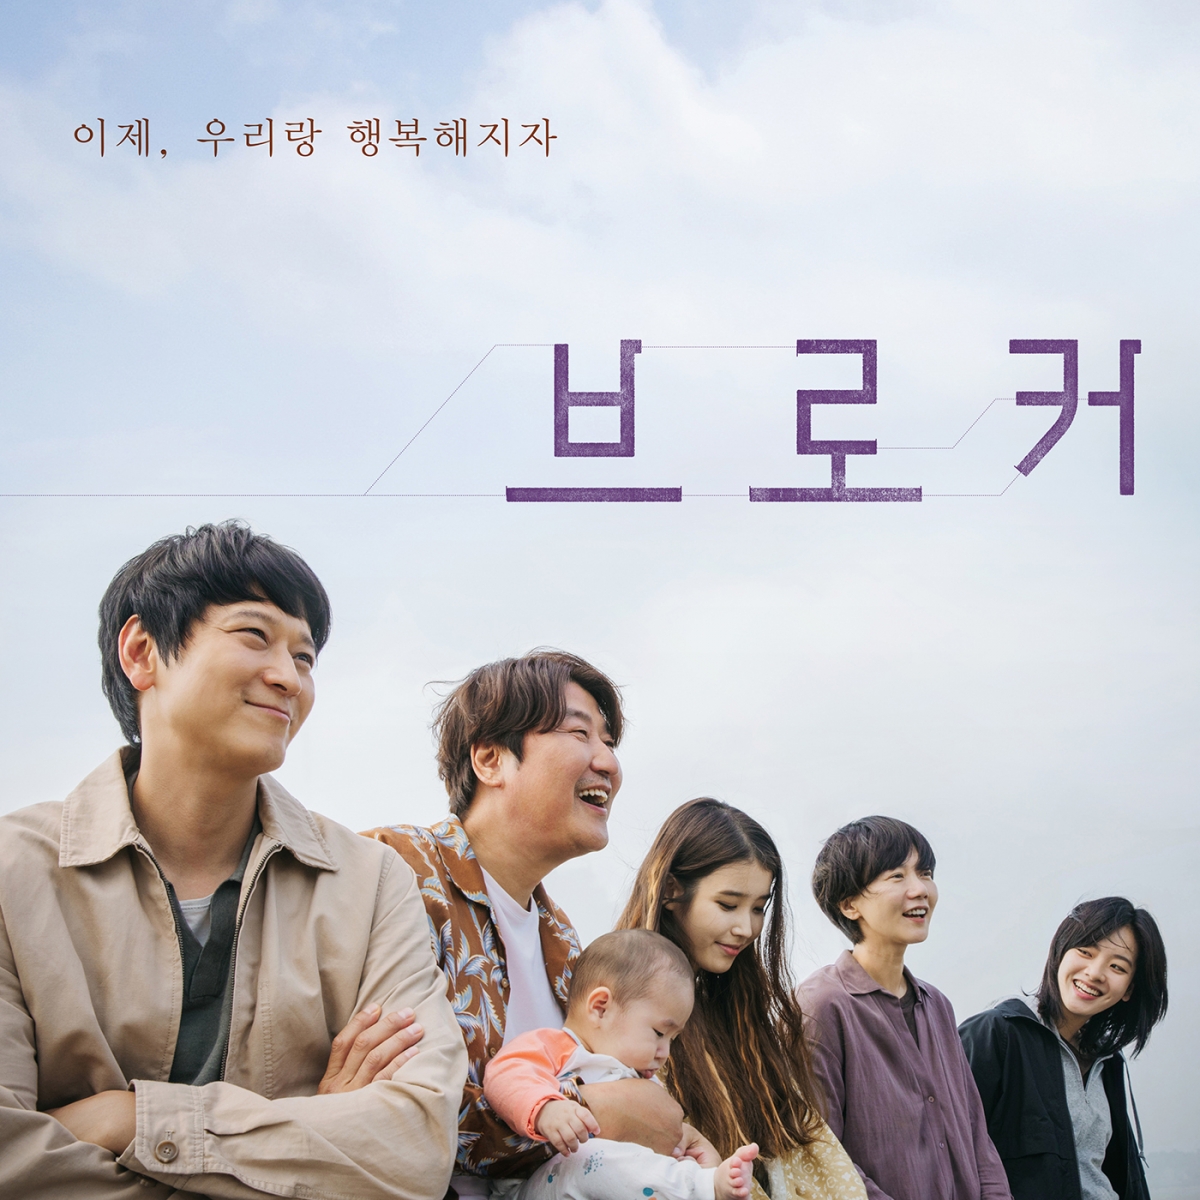 경이로운 수상 소식<br>한국 영화의 뜨거운 열기